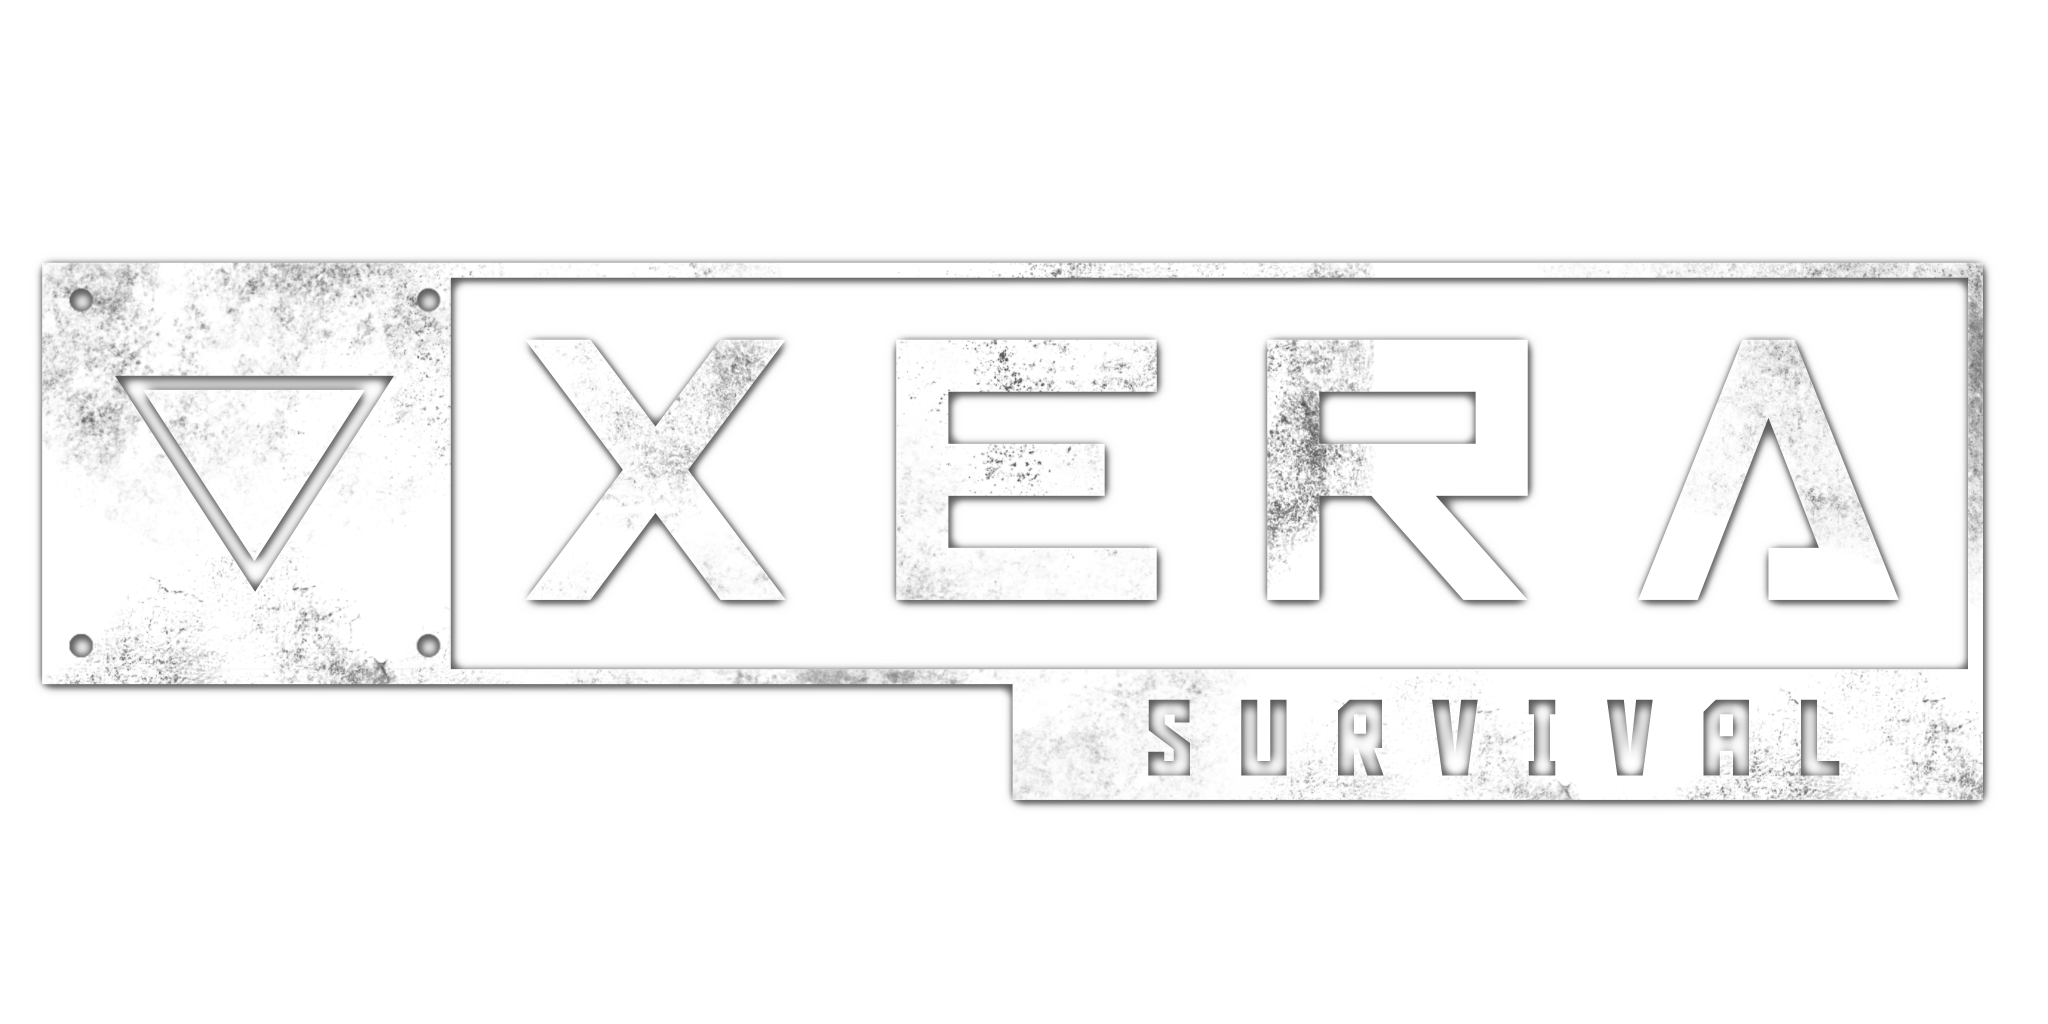 Home Xera Survival Open World Multiplayer Survival Game Pc - roblox zombie killing simulator wiki